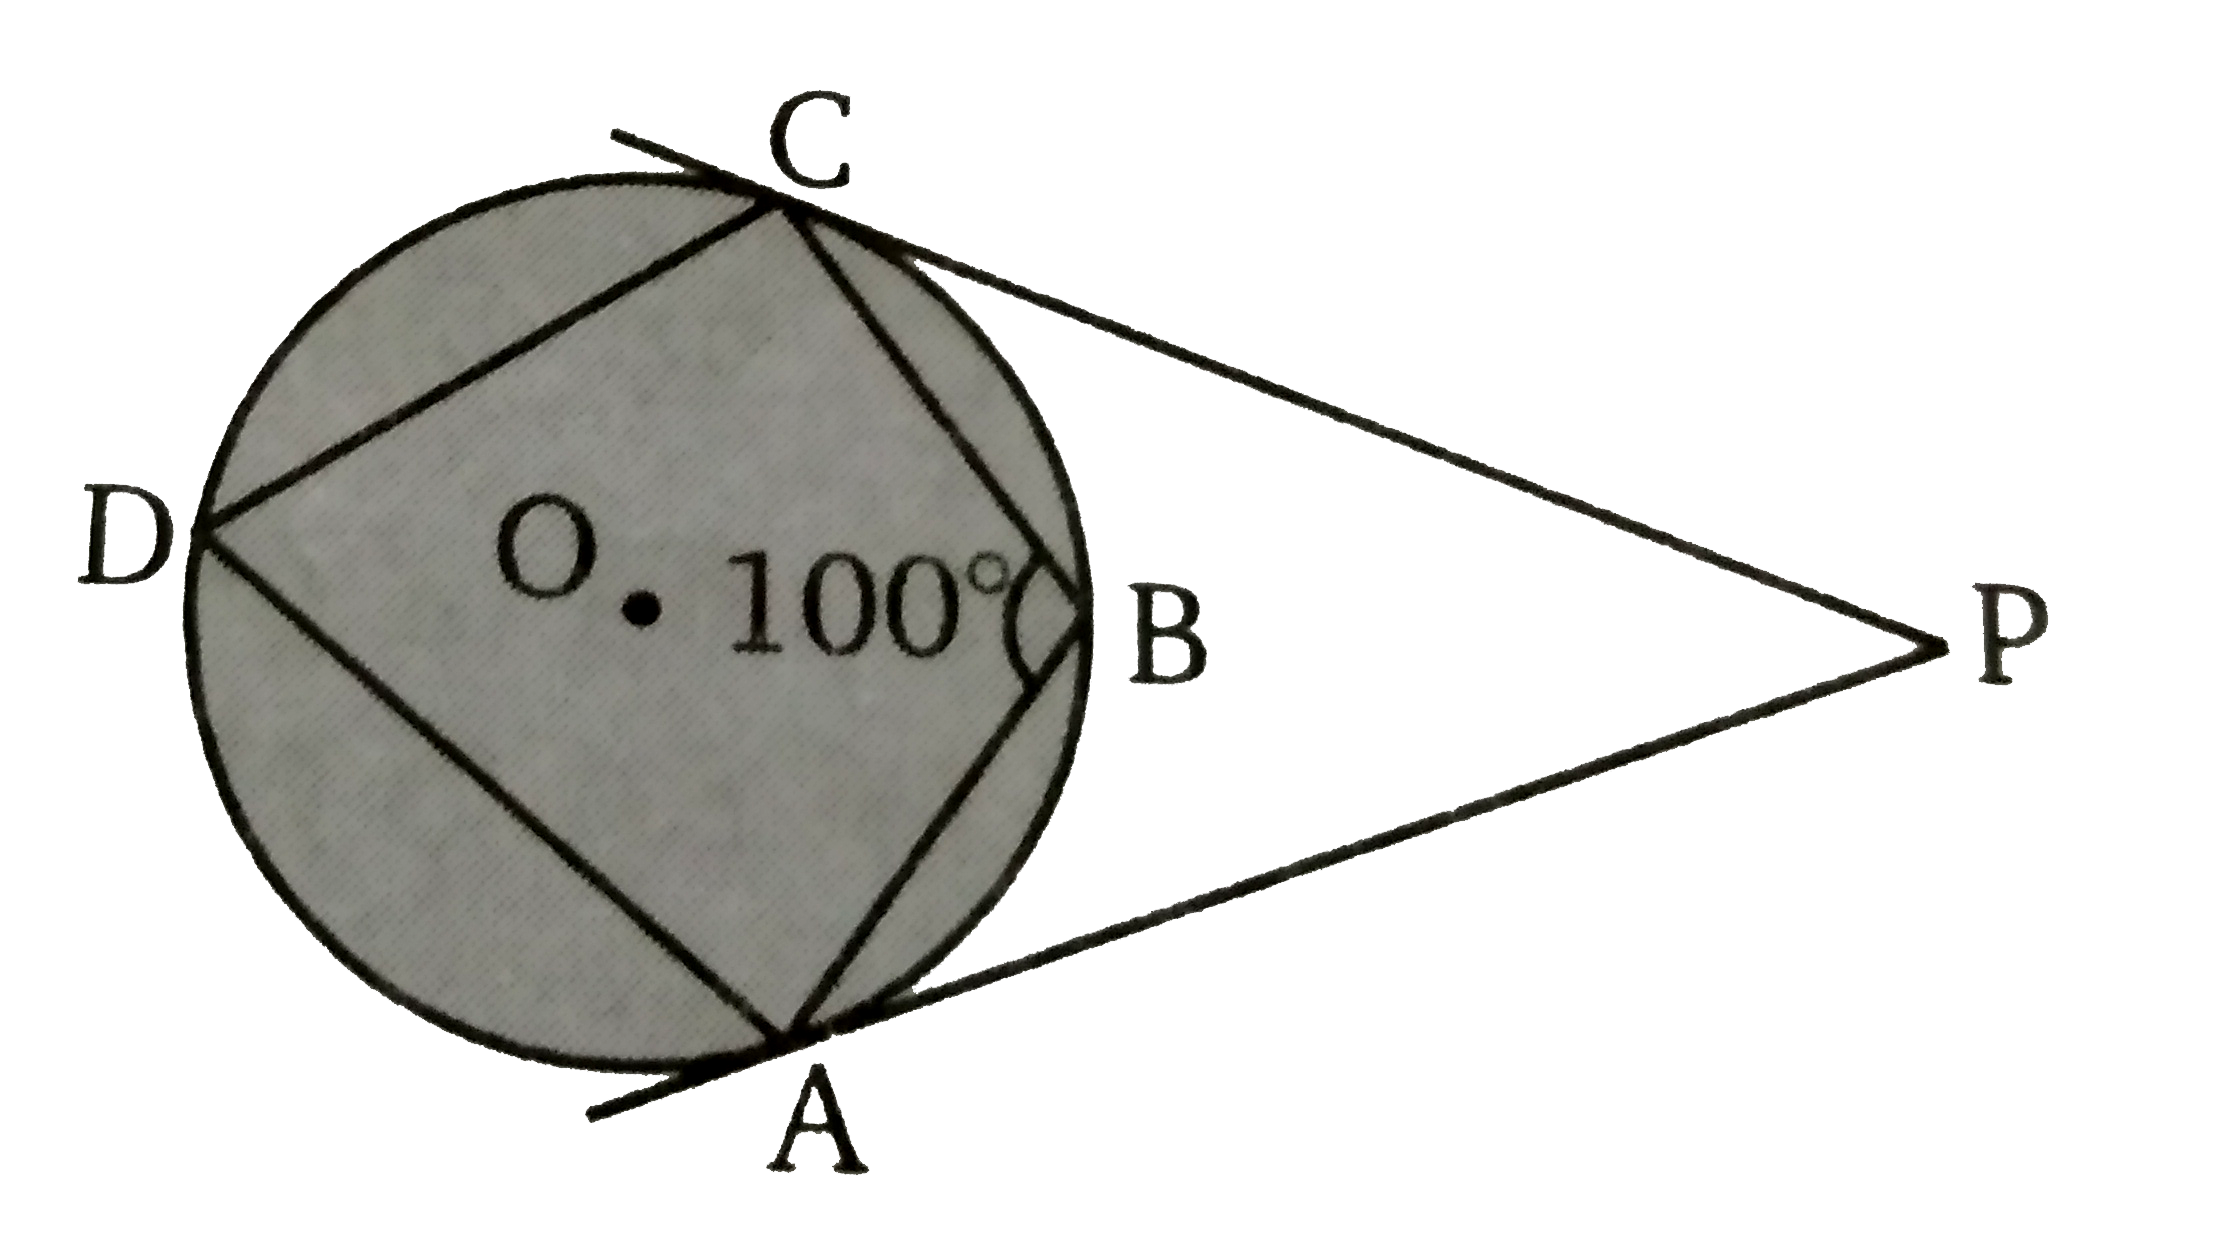 दिये गए चित्र में ABCD  एक चक्रीय चतुर्भुज है। बिन्दु A  व C  पर  खींची गई स्पर्शी एक-दूसरे से बिन्दु P  पर मिलती हैं यदि angle ABC = 100^(@) तब angle APC  का मान ज्ञात कीजिए ।